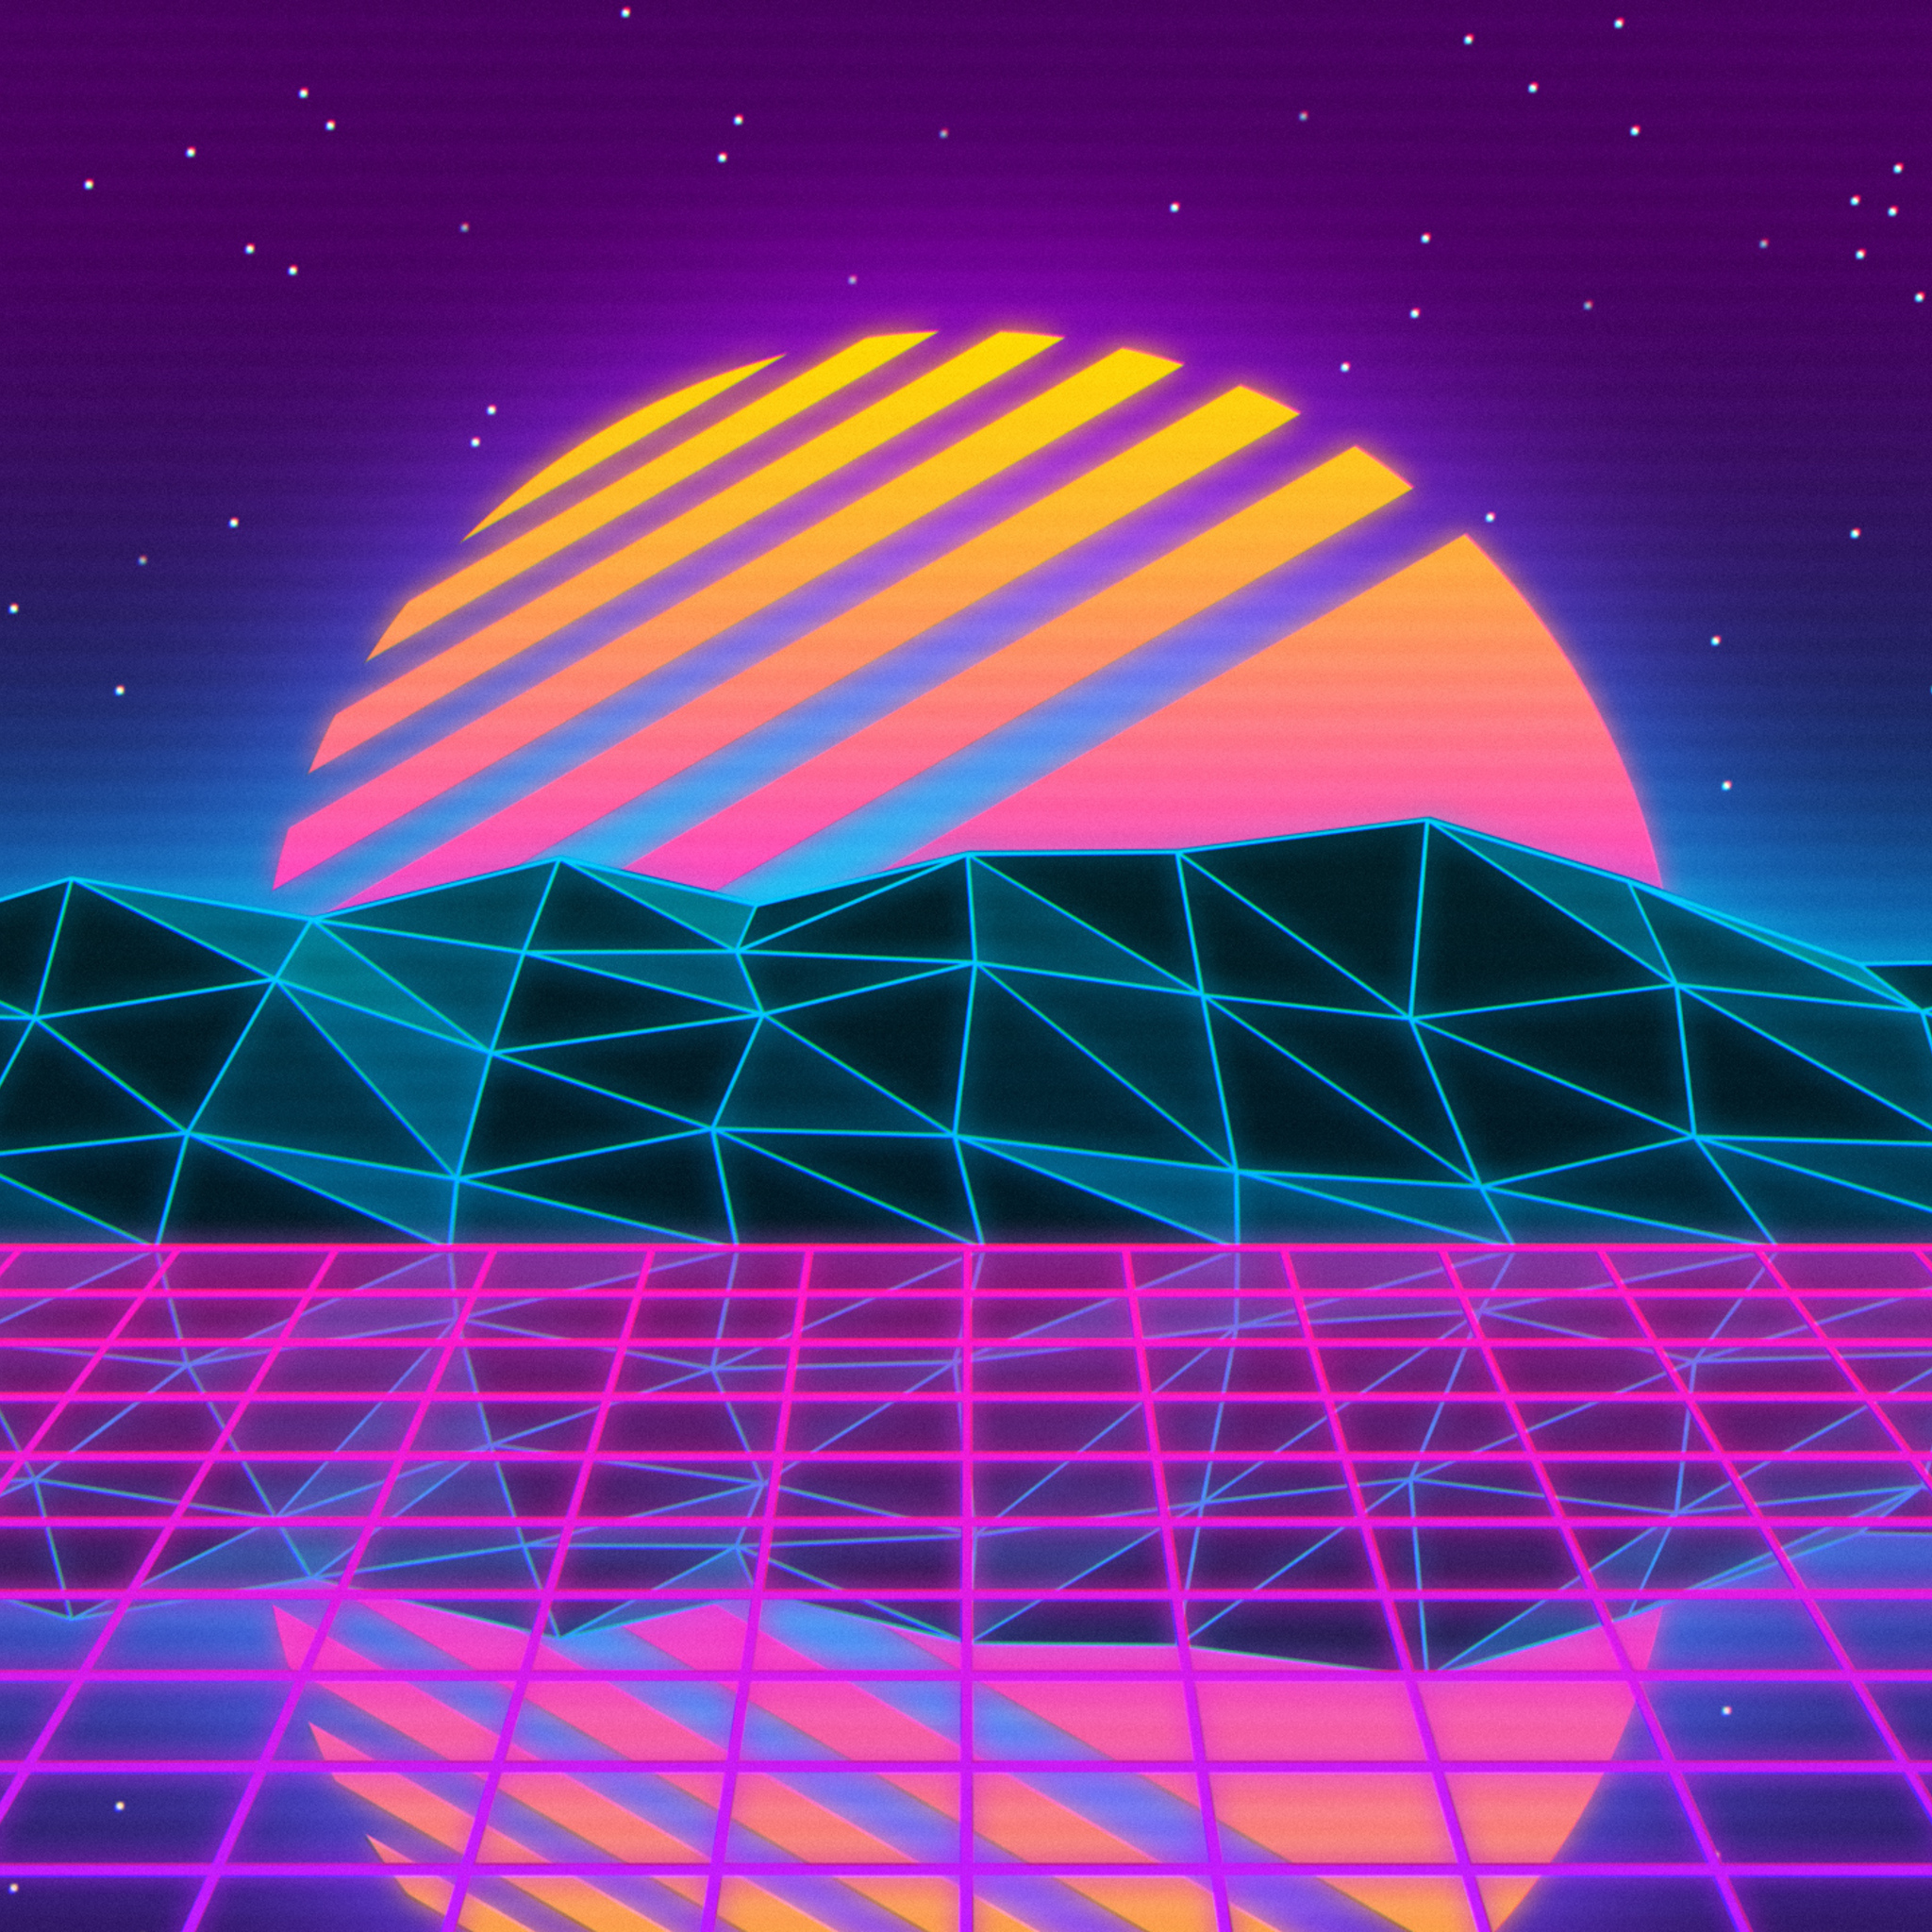 Với hình ảnh đầy màu sắc và độc đáo của Vaporwave, bạn sẽ được trải nghiệm một cảm giác thú vị của thập niên 1980 với tiếng nhạc điện tử cực kỳ sôi động. Nhấn play và tận hưởng những khoảnh khắc đầy vui vẻ và lạ lẫm!